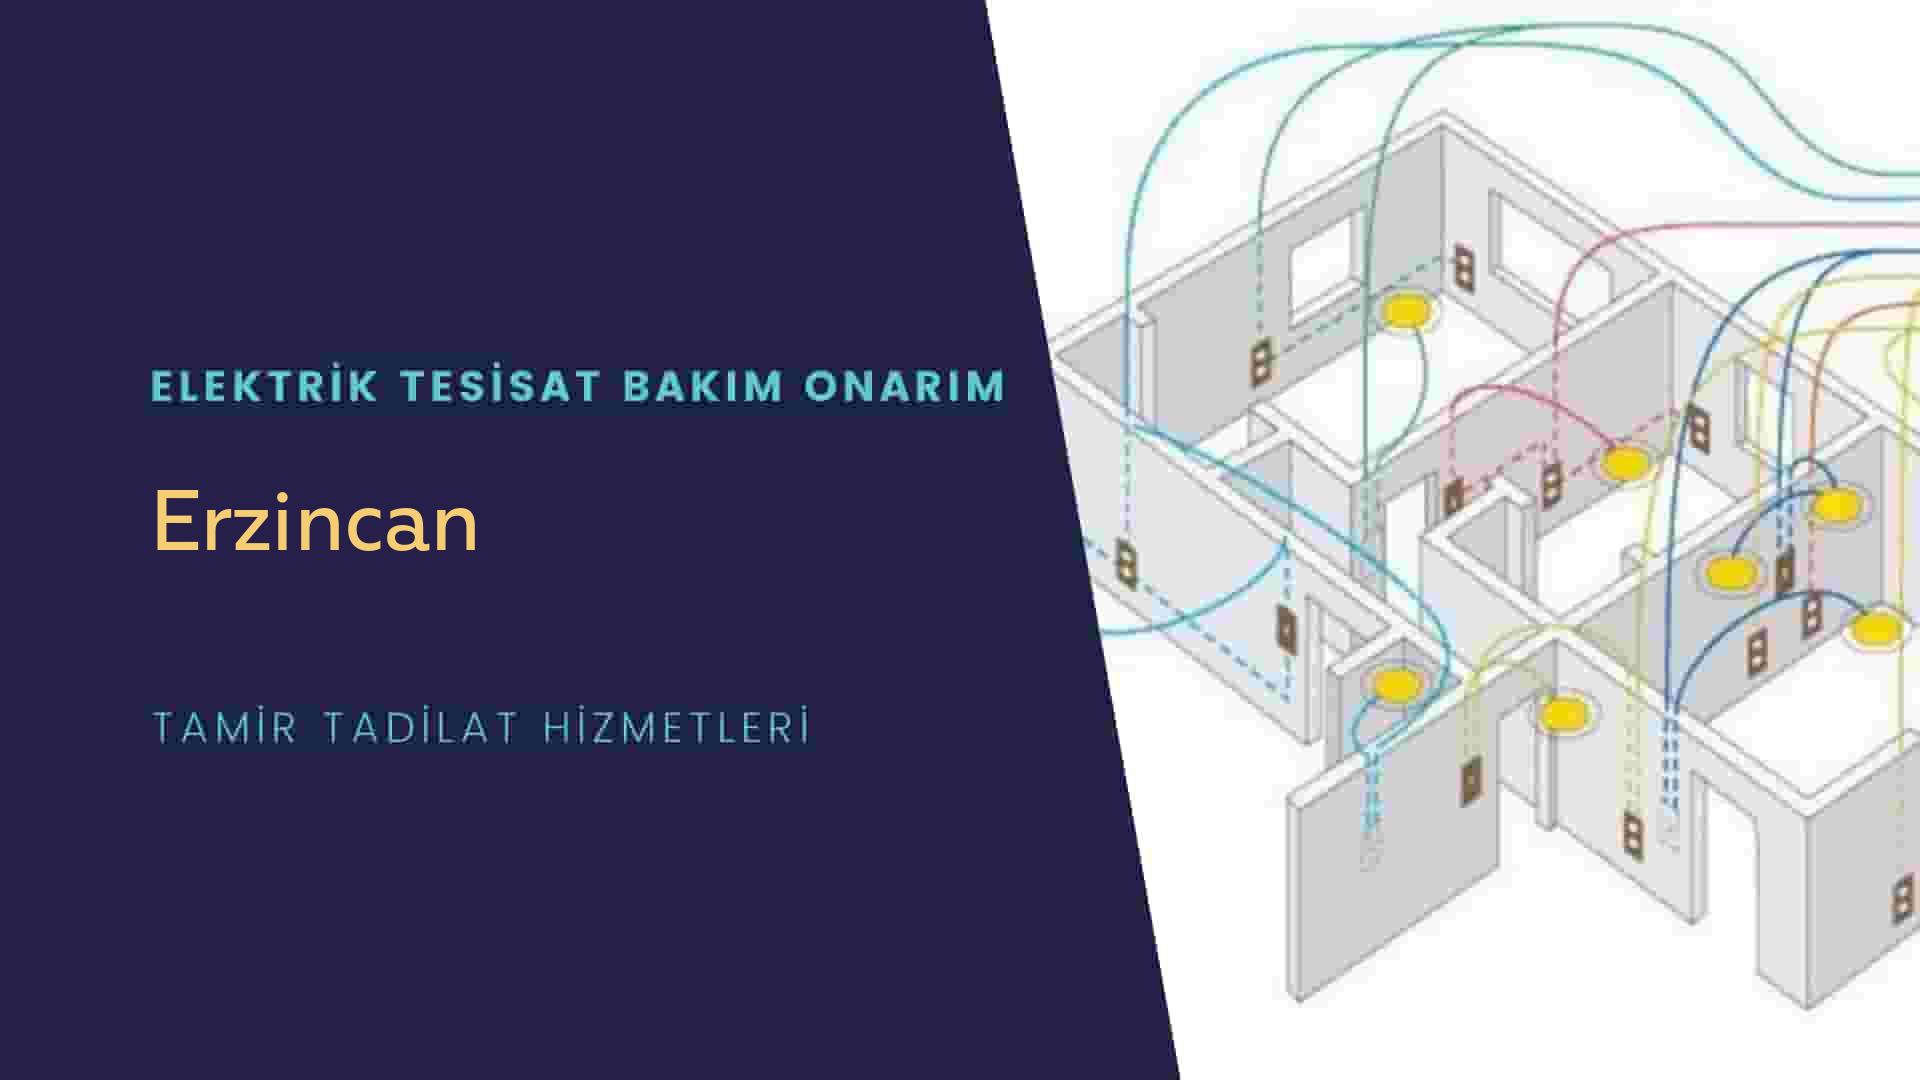 Erzincan'da elektrik tesisatı ustalarımı arıyorsunuz doğru adrestenizi Erzincan elektrik tesisatı ustalarımız 7/24 sizlere hizmet vermekten mutluluk duyar.